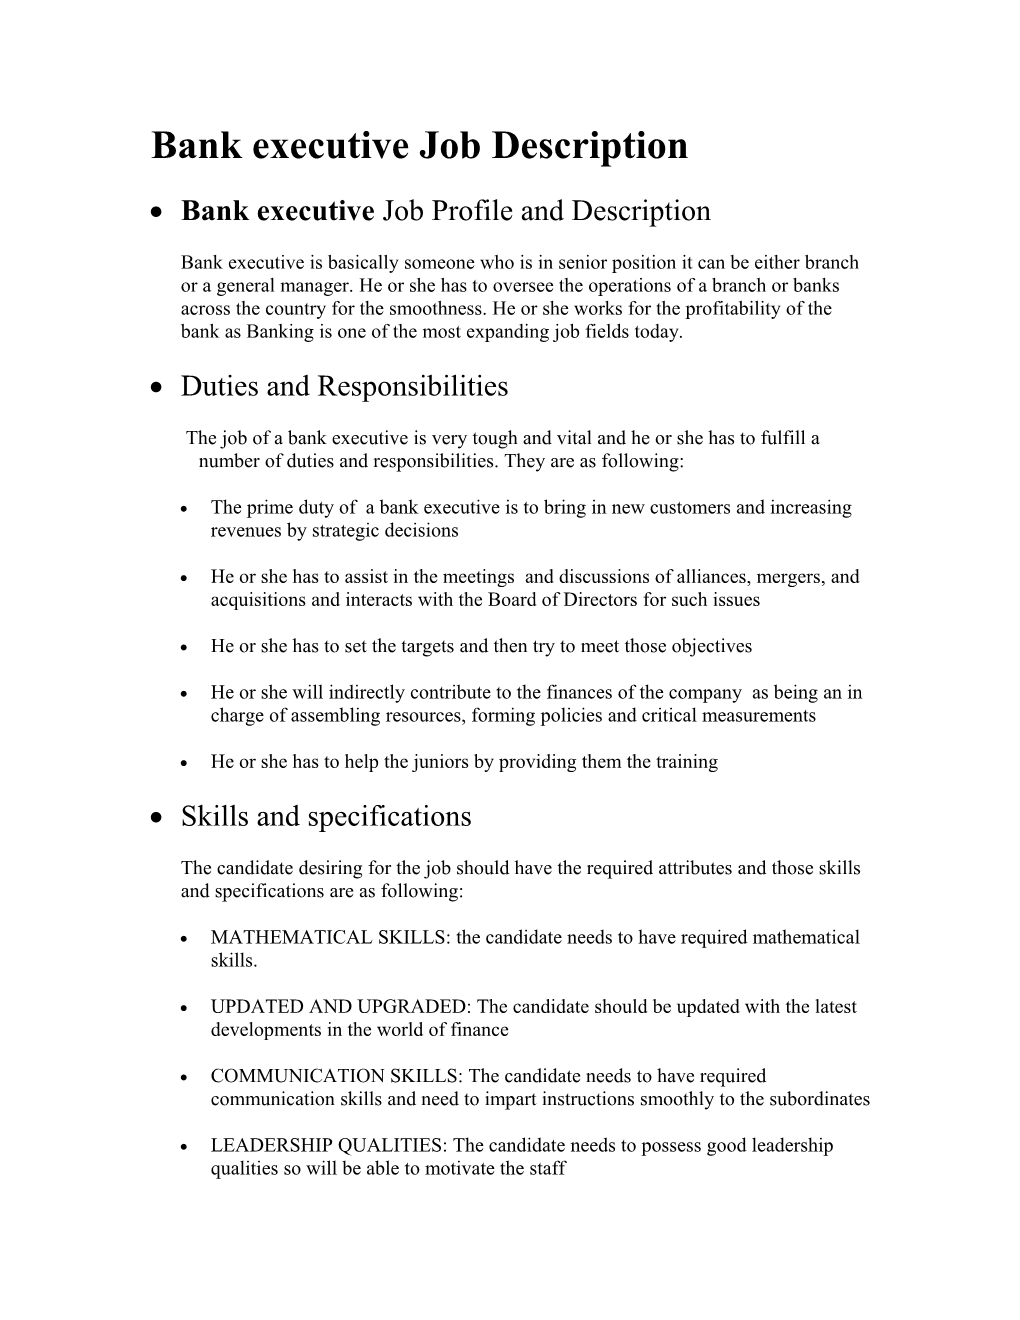 Bank Executive Job Description